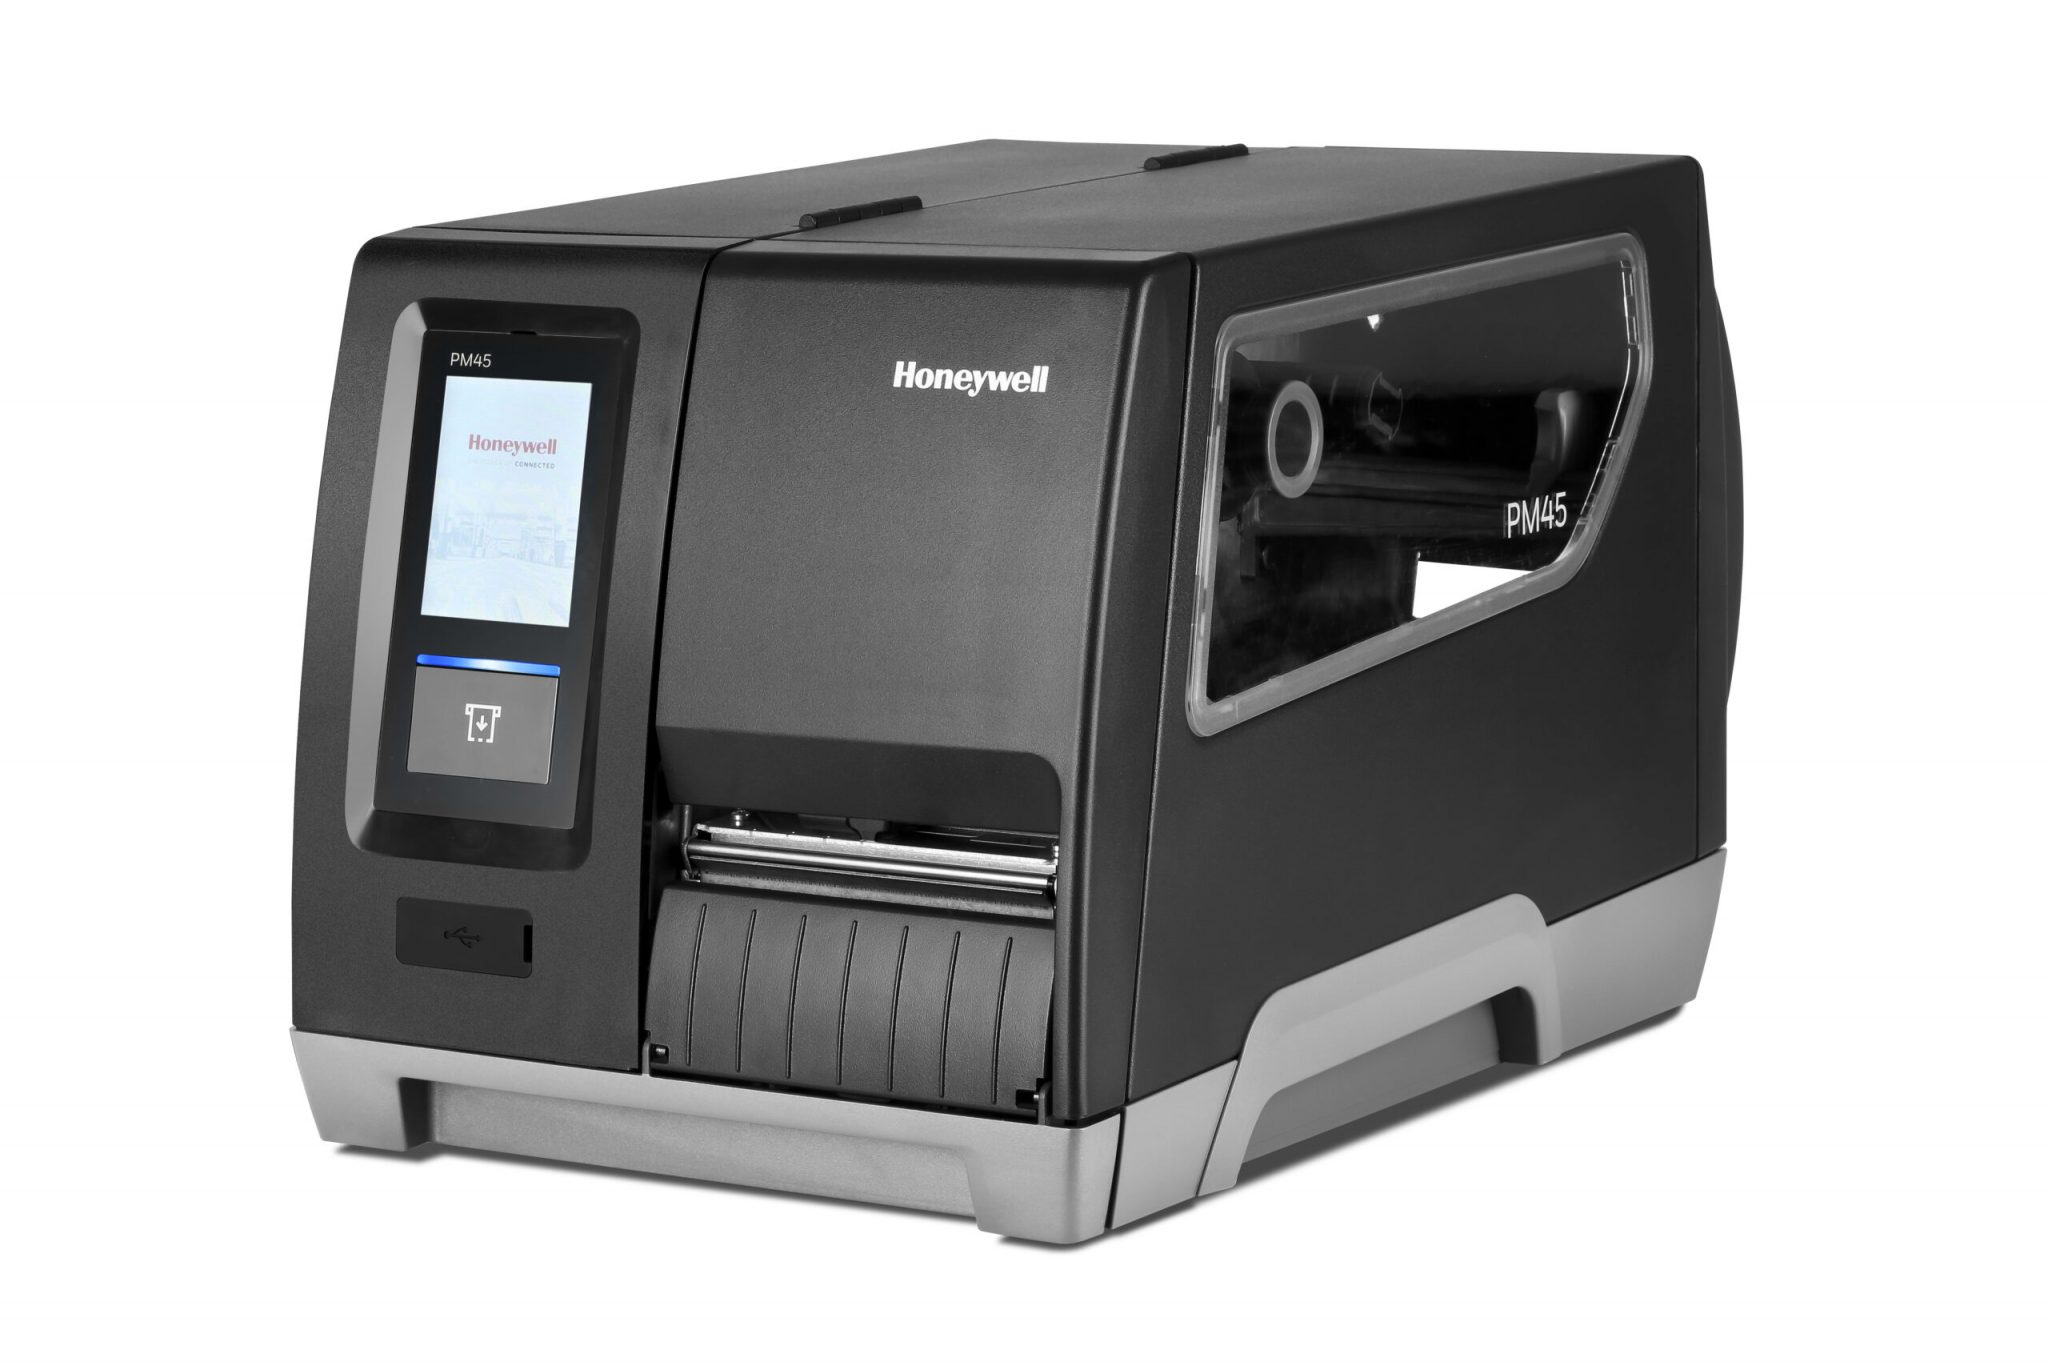 PM45 Honeywell printer